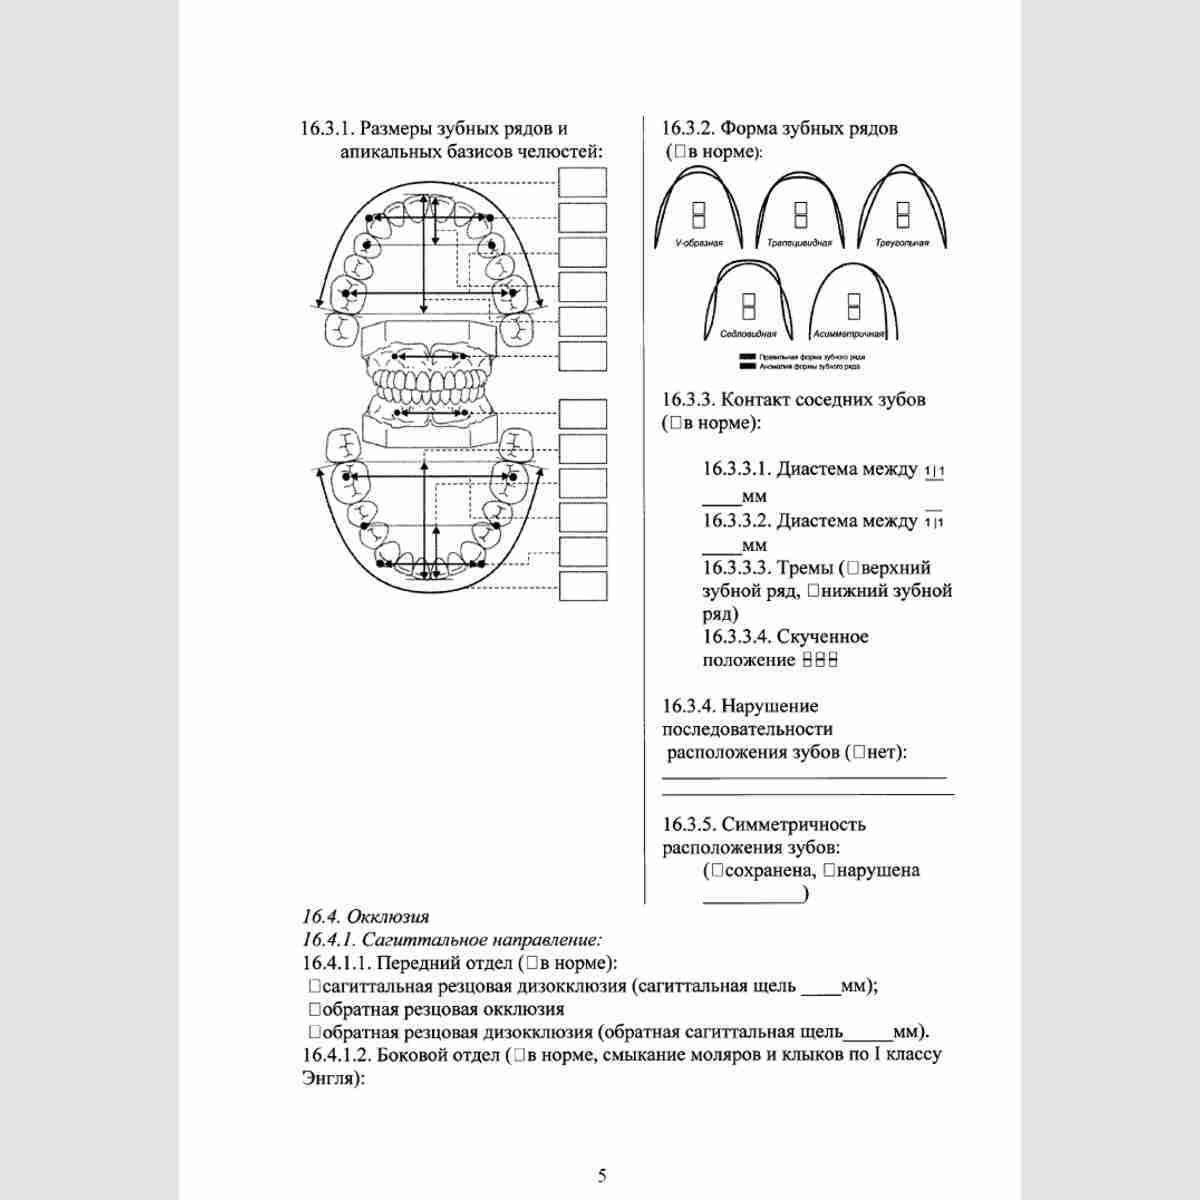 Учетная форма №043-1/у "Медицинская карта ортодонтического пациента". Стр. 5